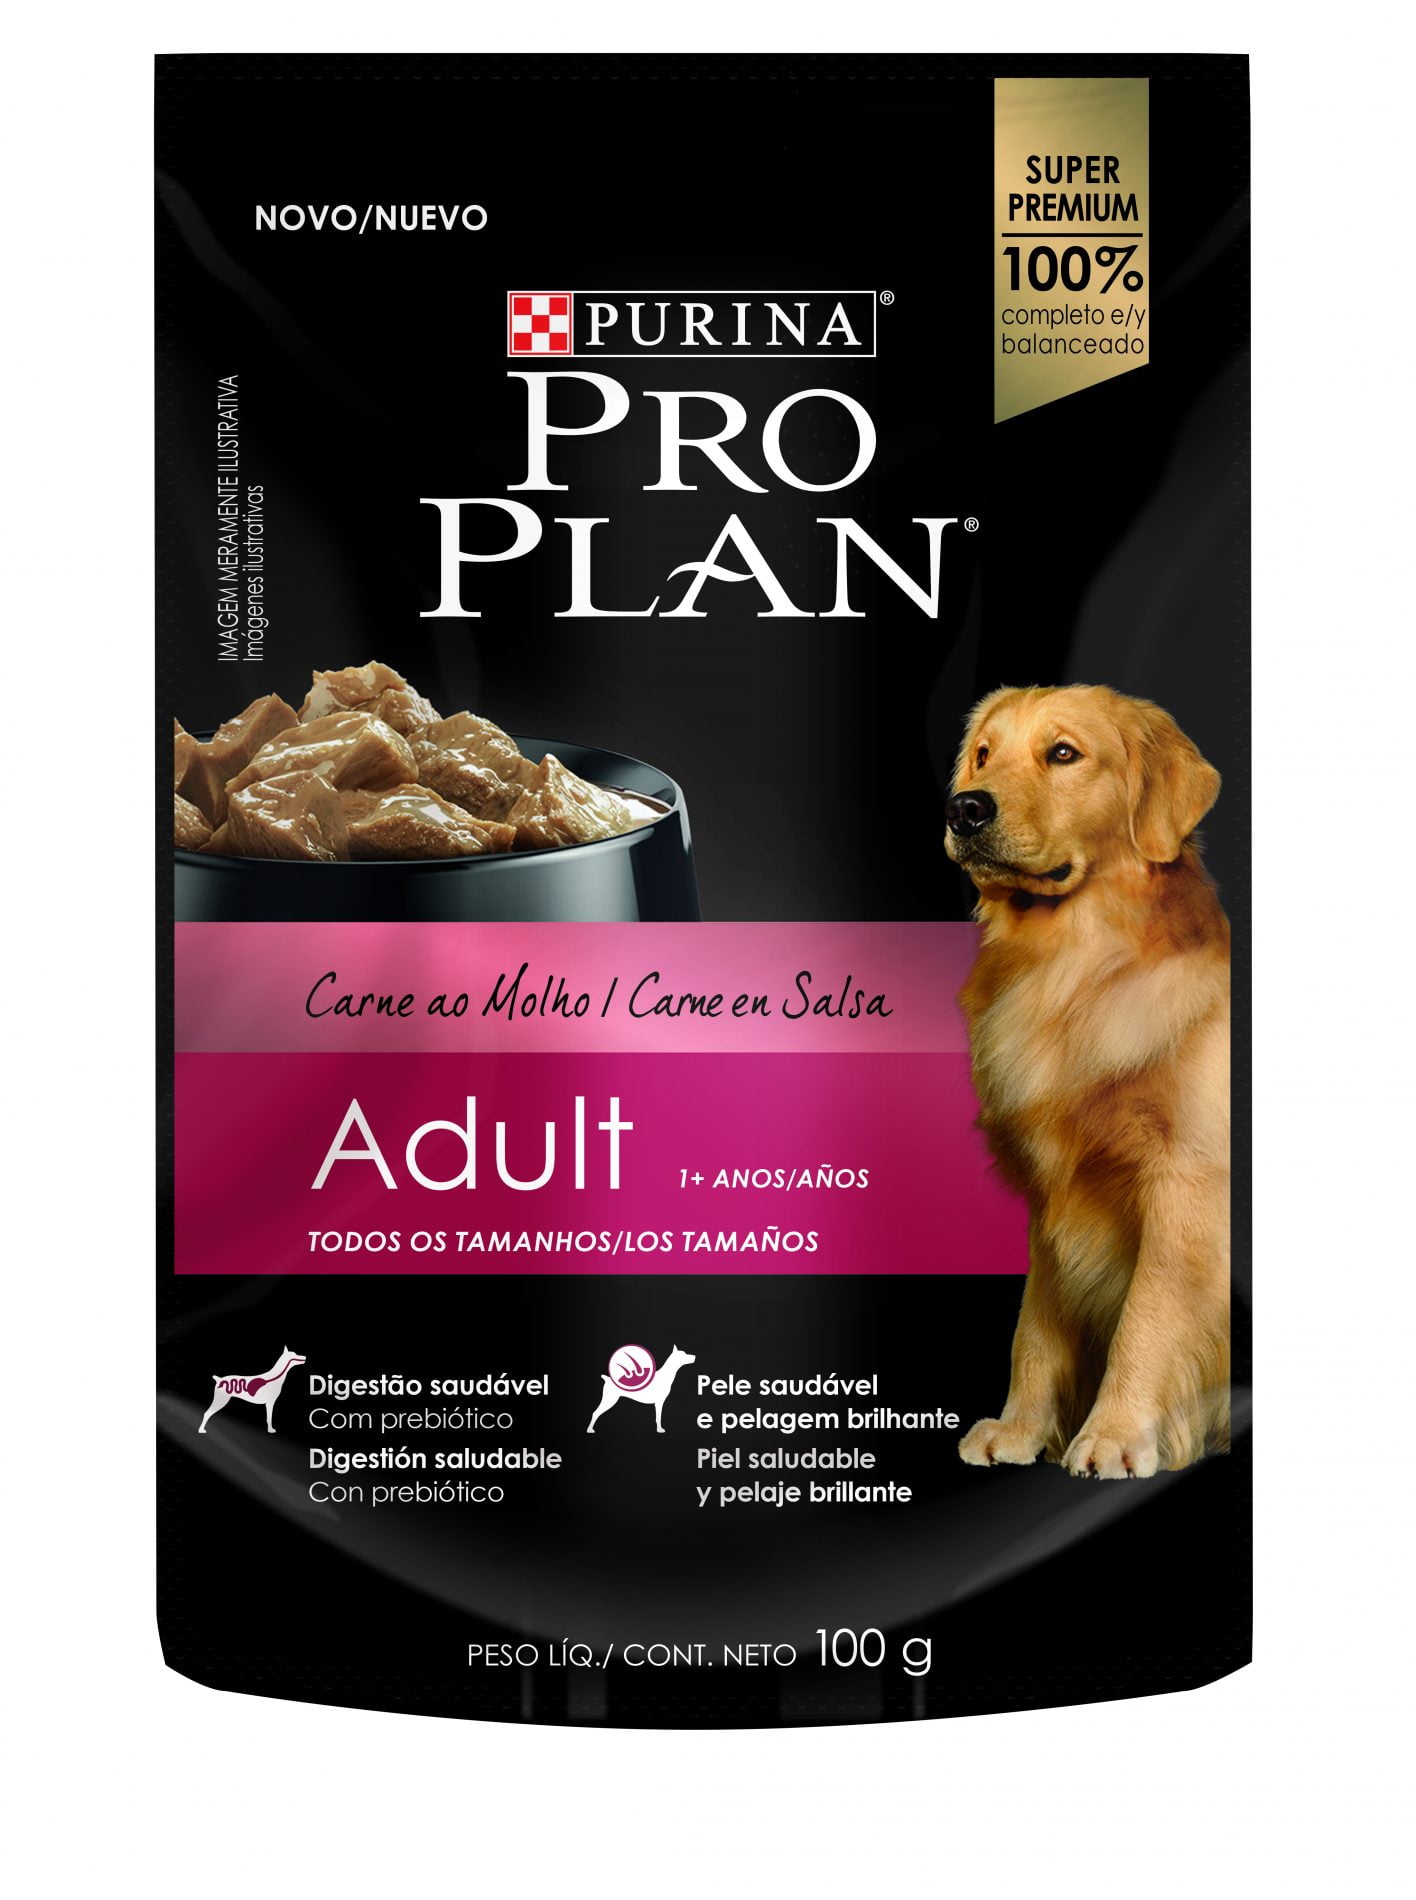 Pro Plan Wet Dog Adult Beef - Tienda de Mascotas Shaly.co